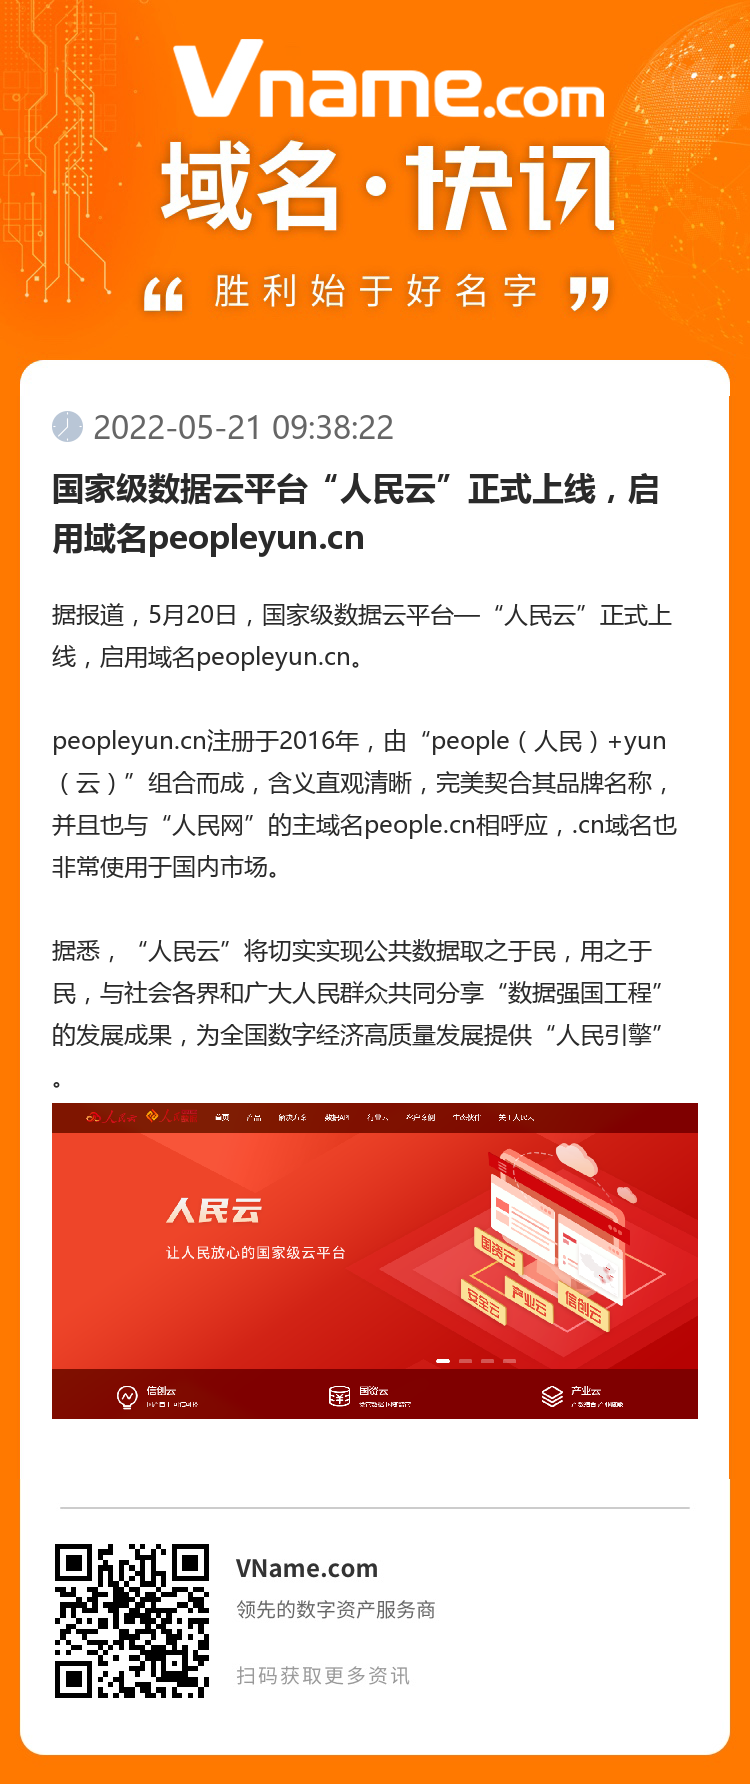 国家级数据云平台“人民云”正式上线，启用域名peopleyun.cn